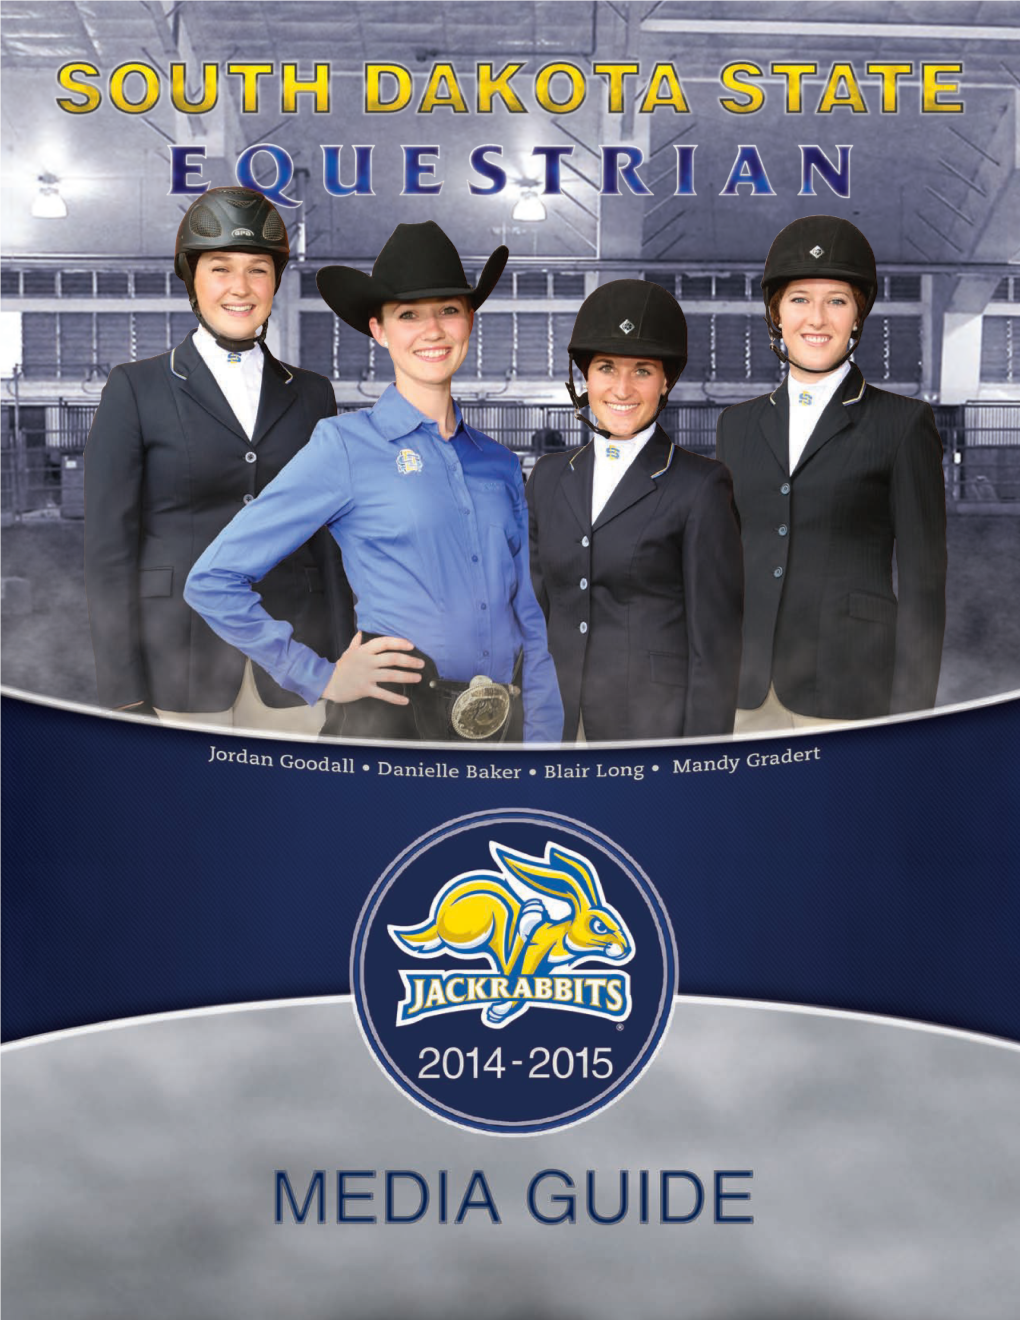 South Dakota State Equestrian 2014-15 Media Guide